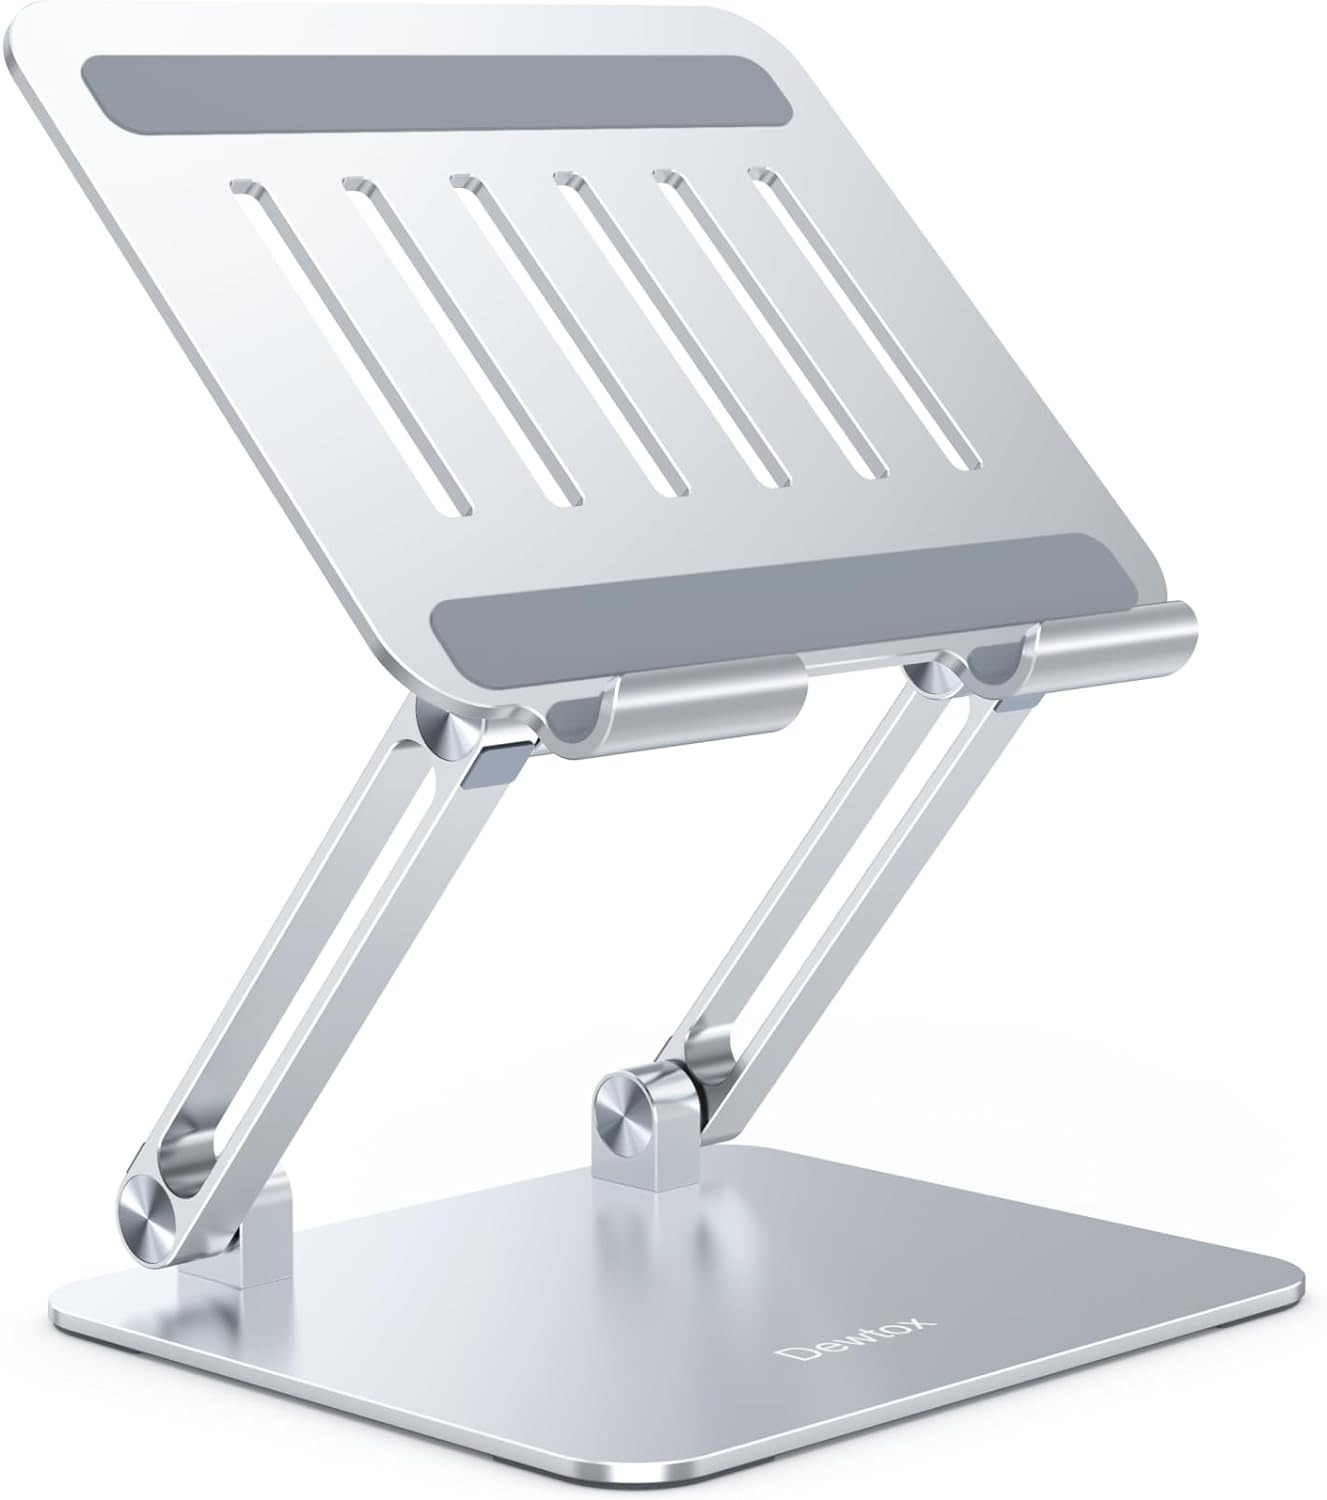 Tablet Stand Adjustable Height Drawing Tablet Stands Desk Foldable Holder Dock